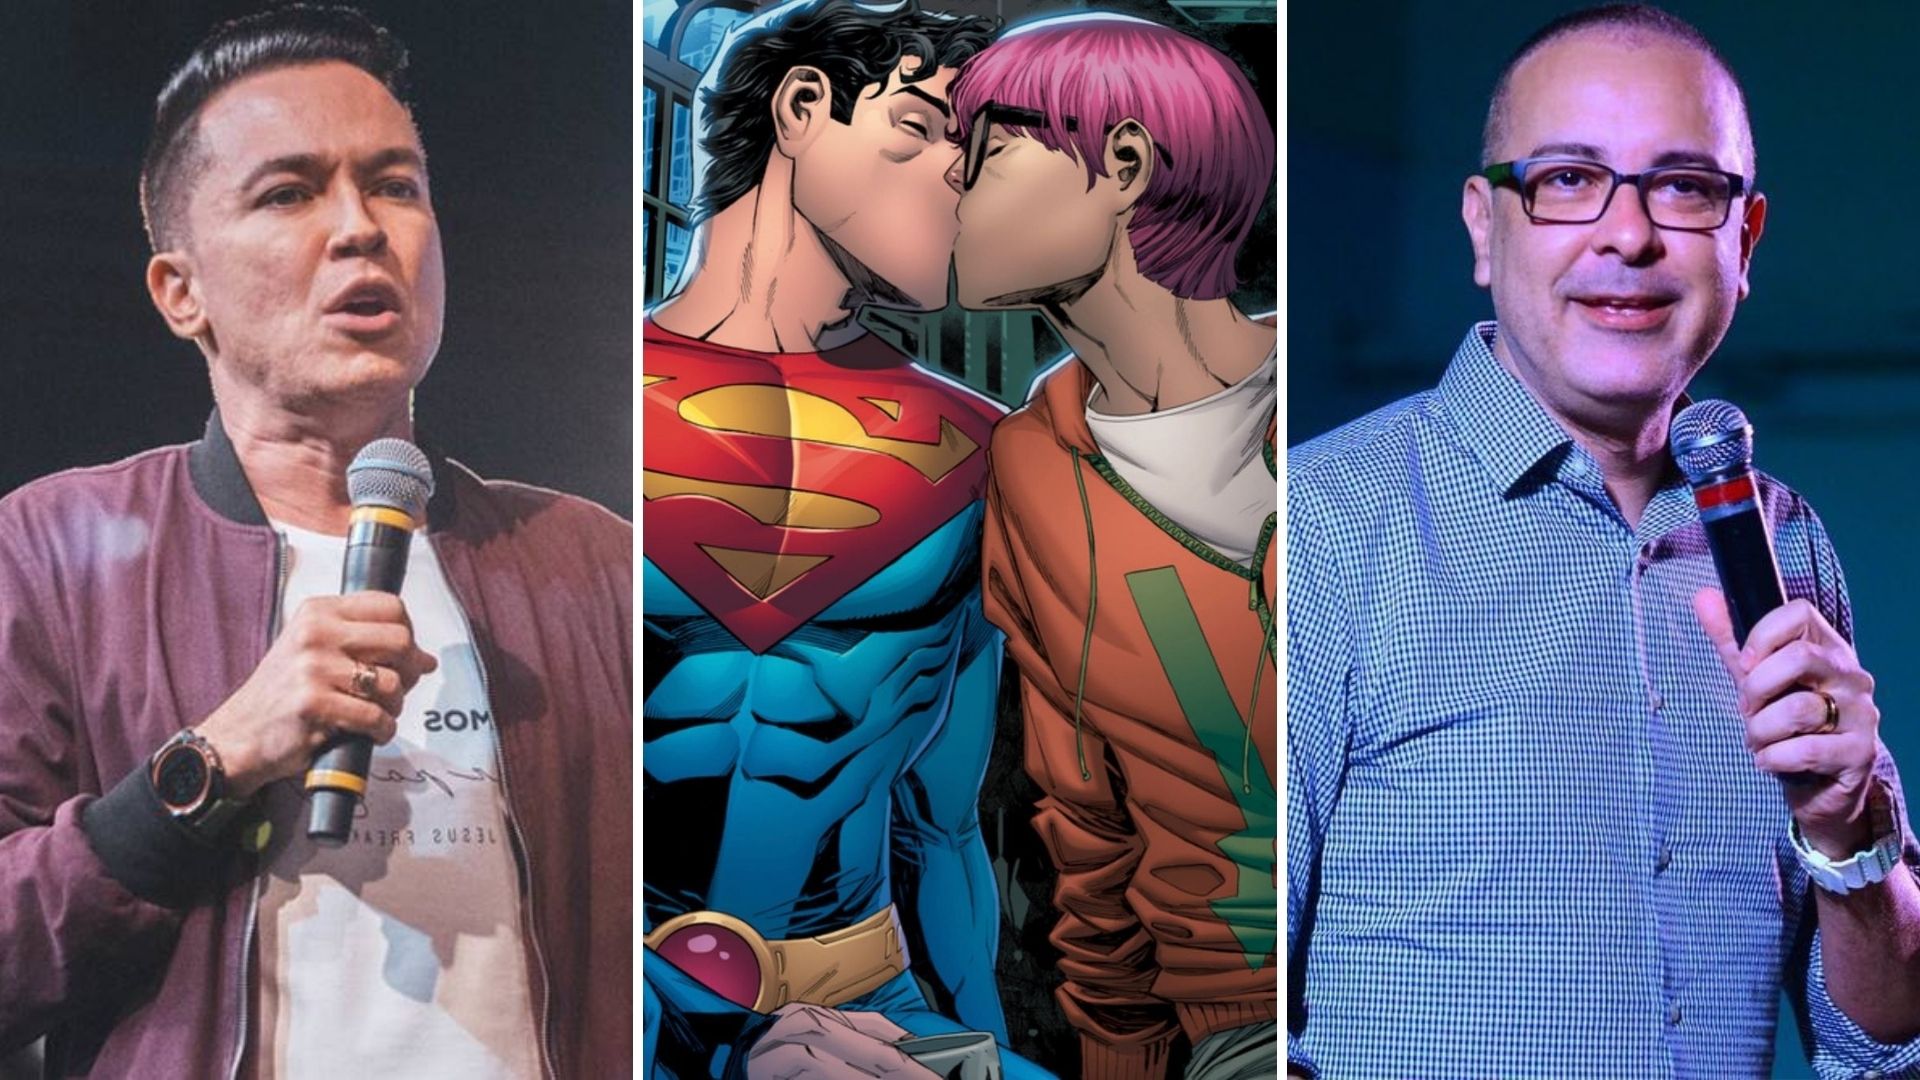 Pastores criticam Superman bissexual: 'Destruição da família'